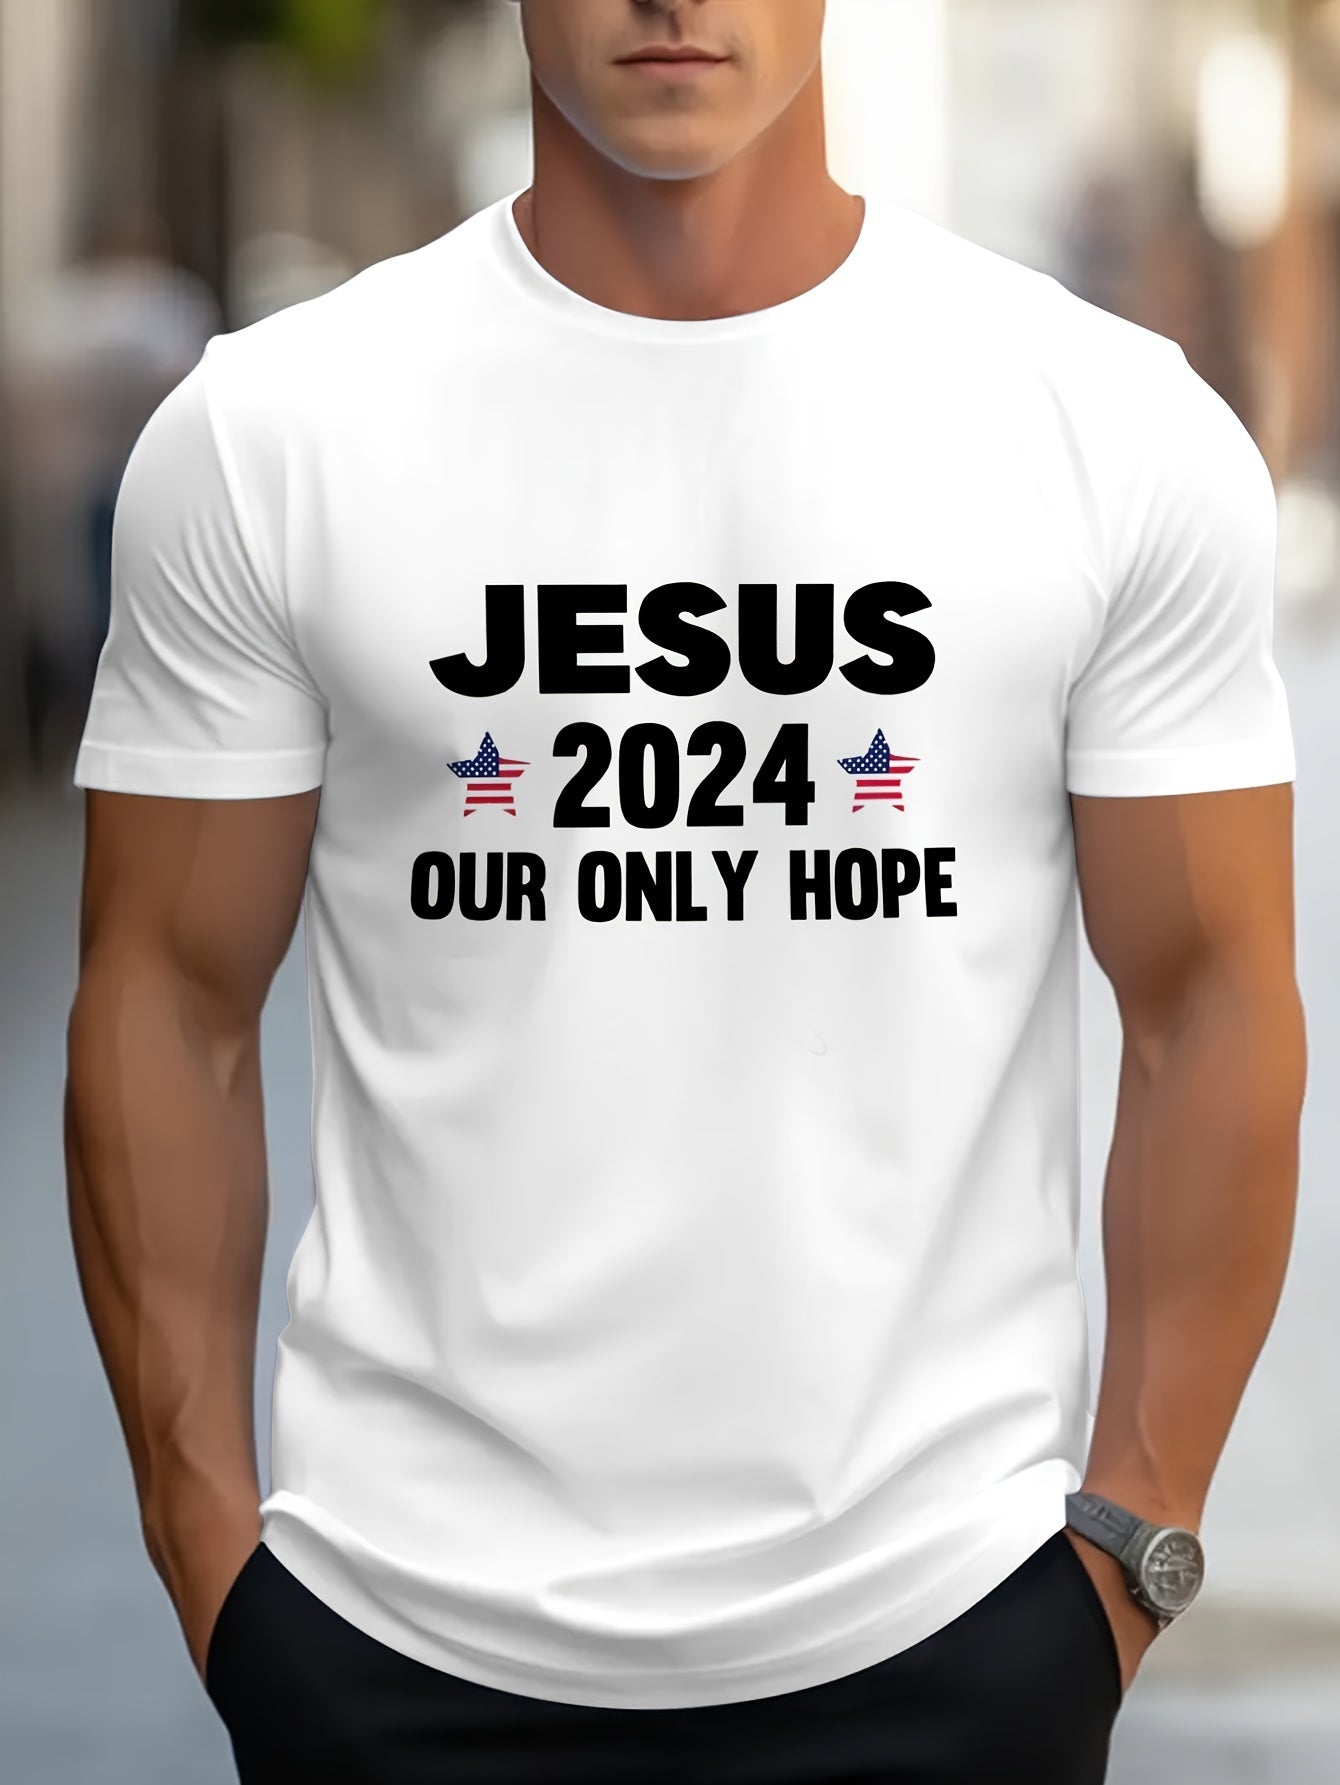 JESUS 2024 Our Only Hope Men's Christian T-shirt claimedbygoddesigns